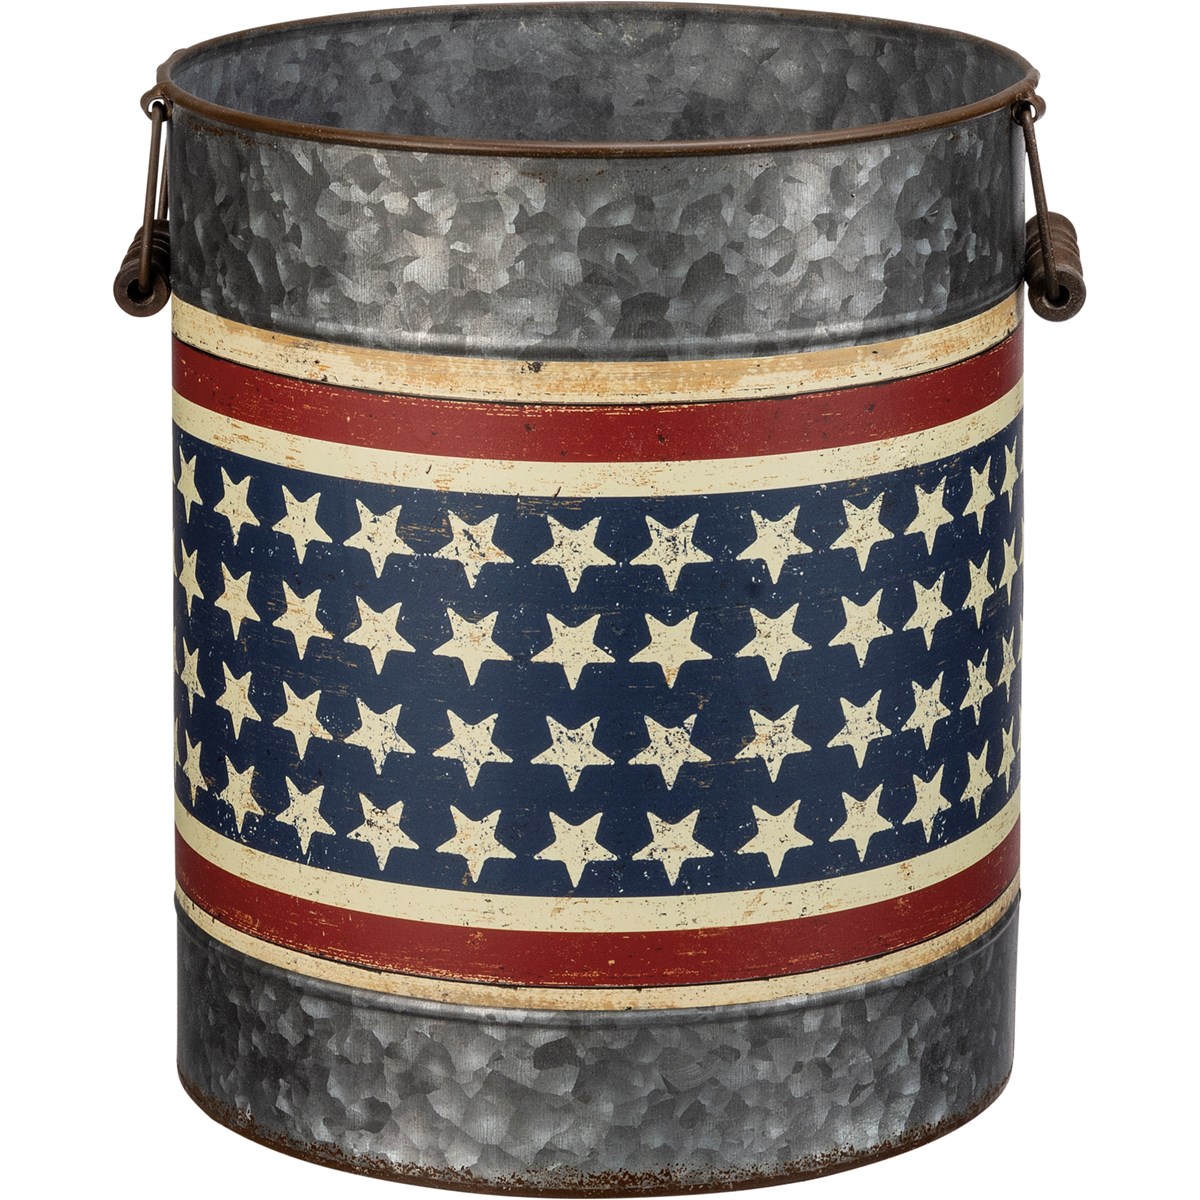 Stars & Stripes Bucket Set - Metal, Paper, Wood